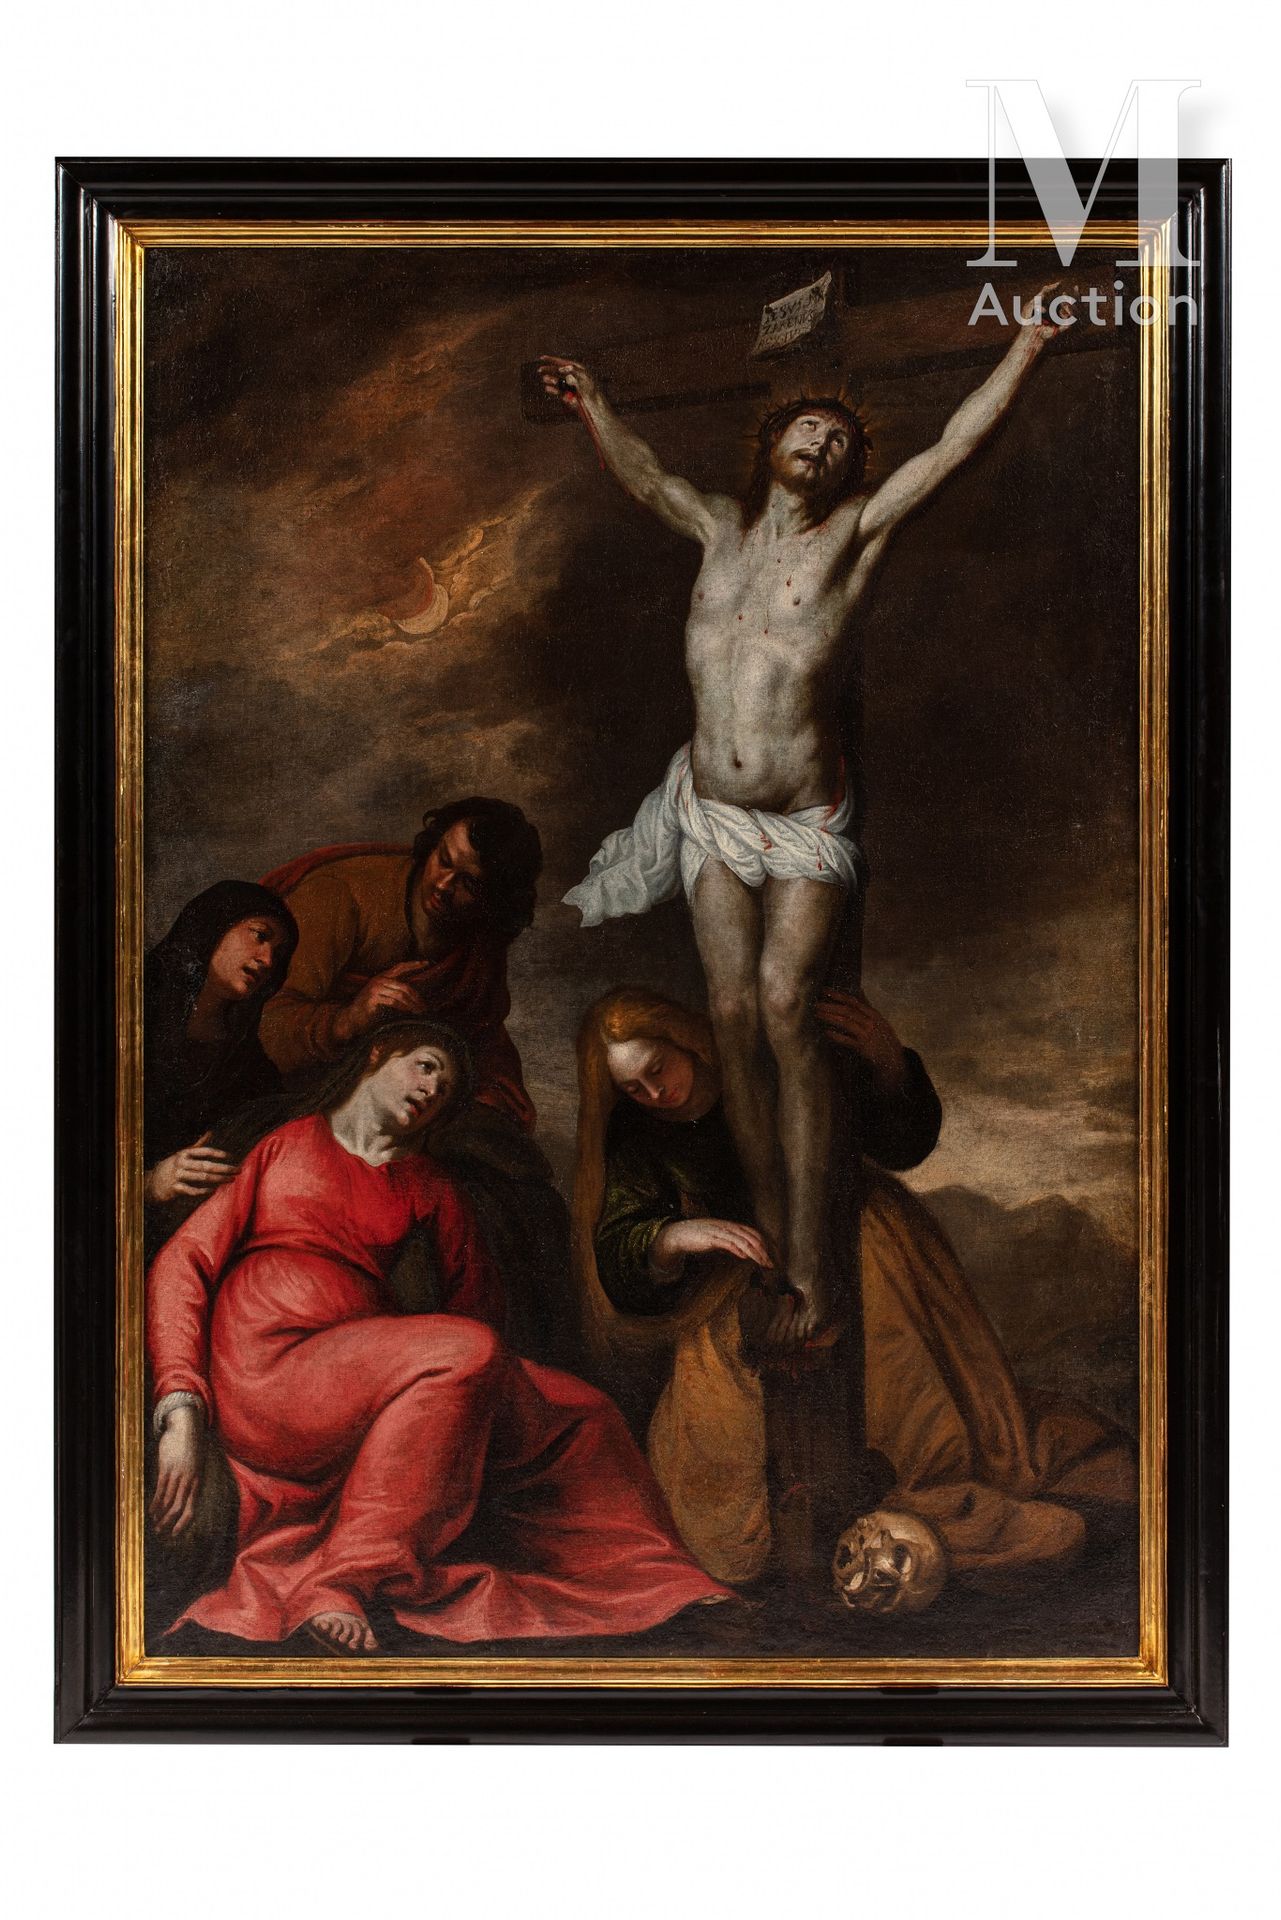 Luciano BORZONE (Gênes 1590 - 1645) Crucifixion

Toile

H: 170 x L: 120 cm